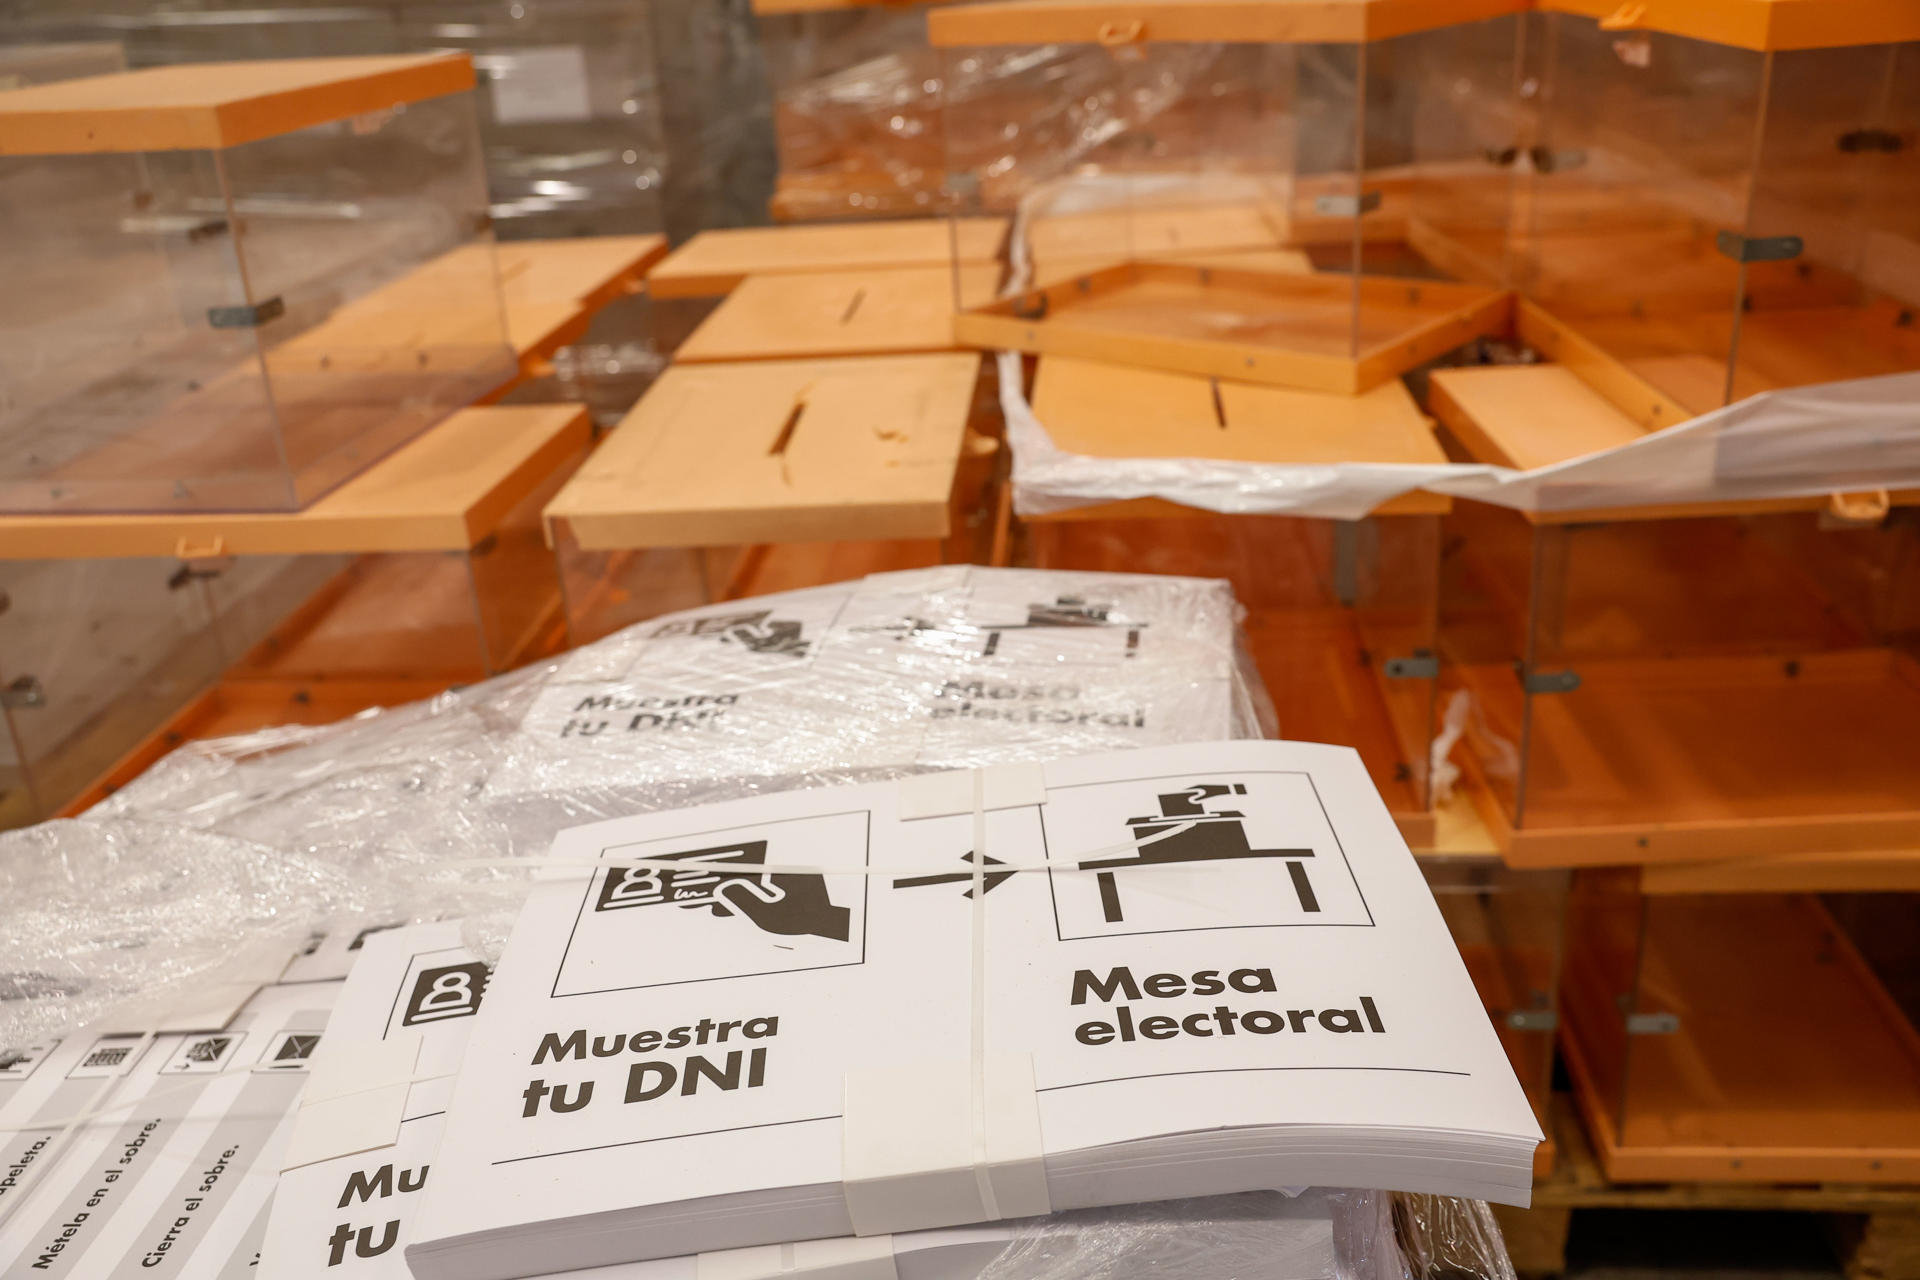 rnas y papeletas almacenadas este miércoles en el centro logístico para las elecciones locales y autonómicas del 28-M.